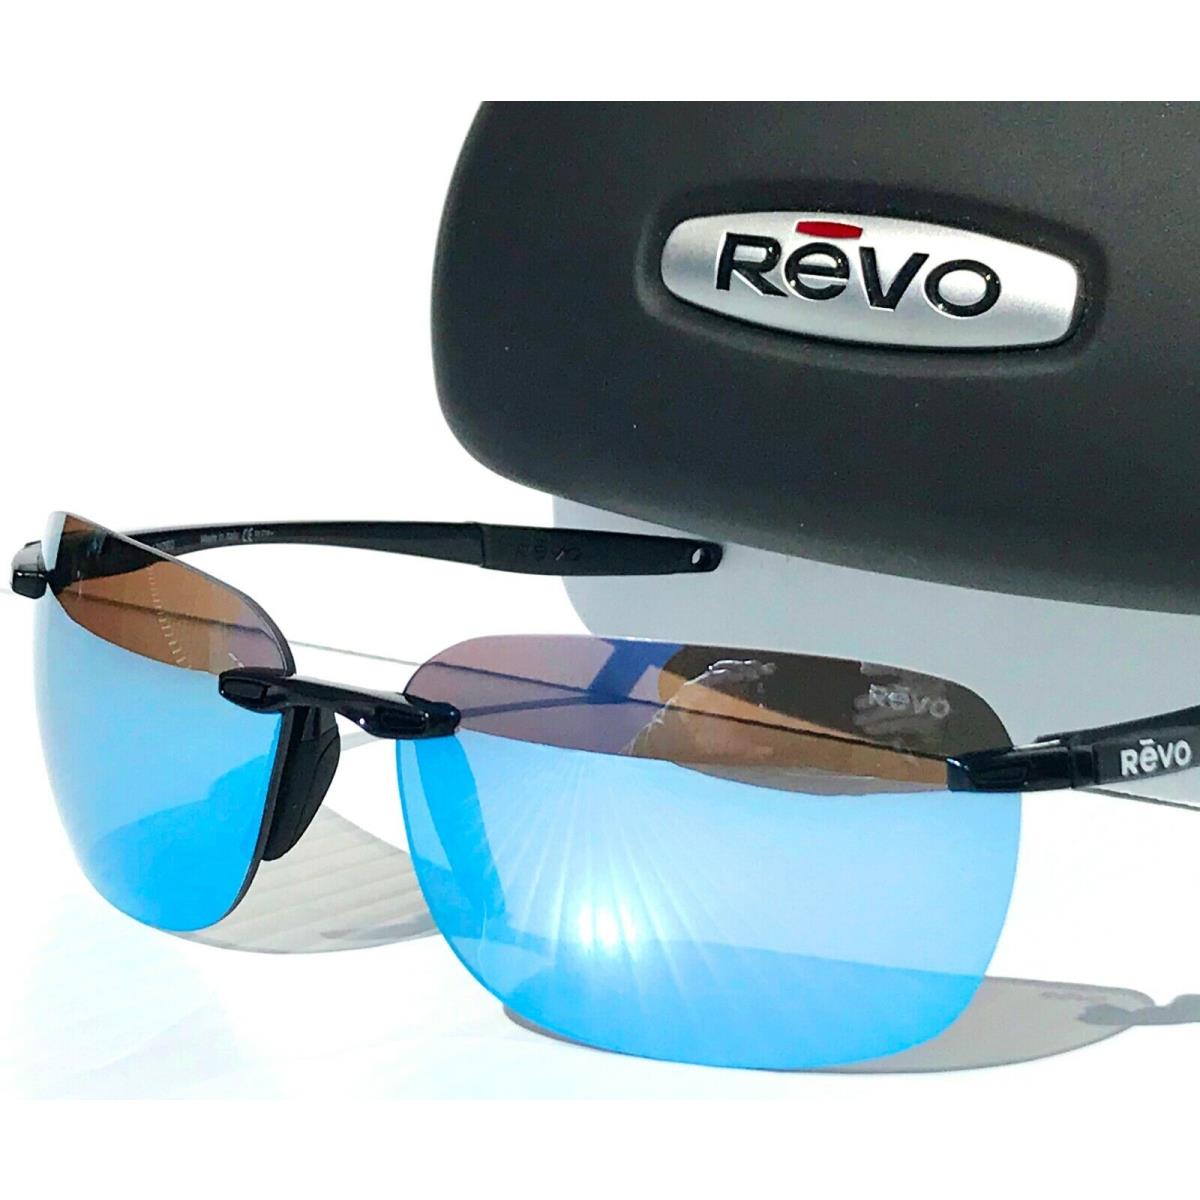 Revo sunglasses Descend - Black Frame, Blue Lens